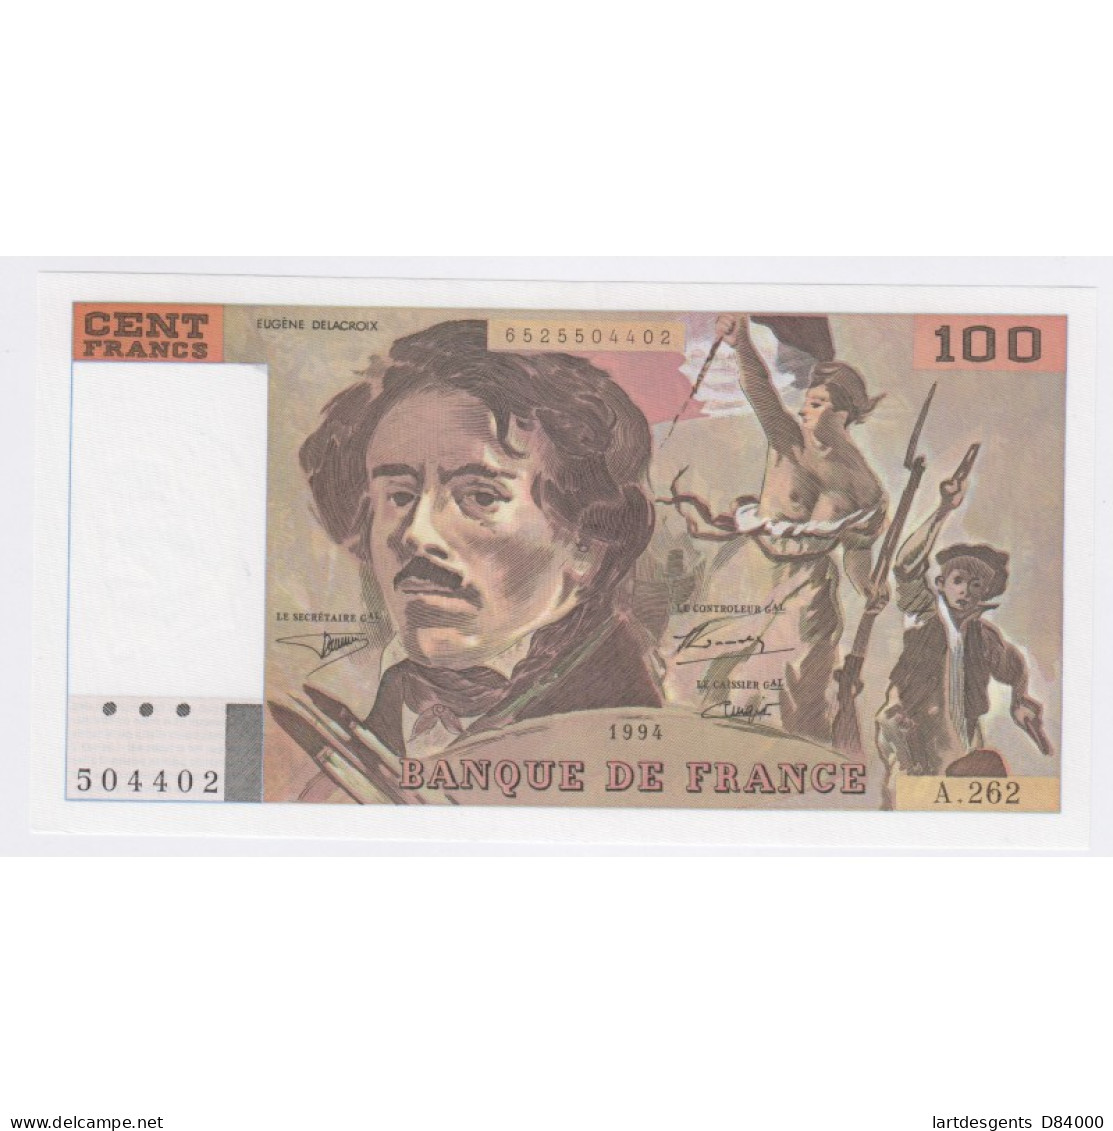 Billet France 100 Francs Delacroix 1994, A.262 504402, Neuf, Cote 60 Euros,  Lartdesgents - 100 F 1978-1995 ''Delacroix''